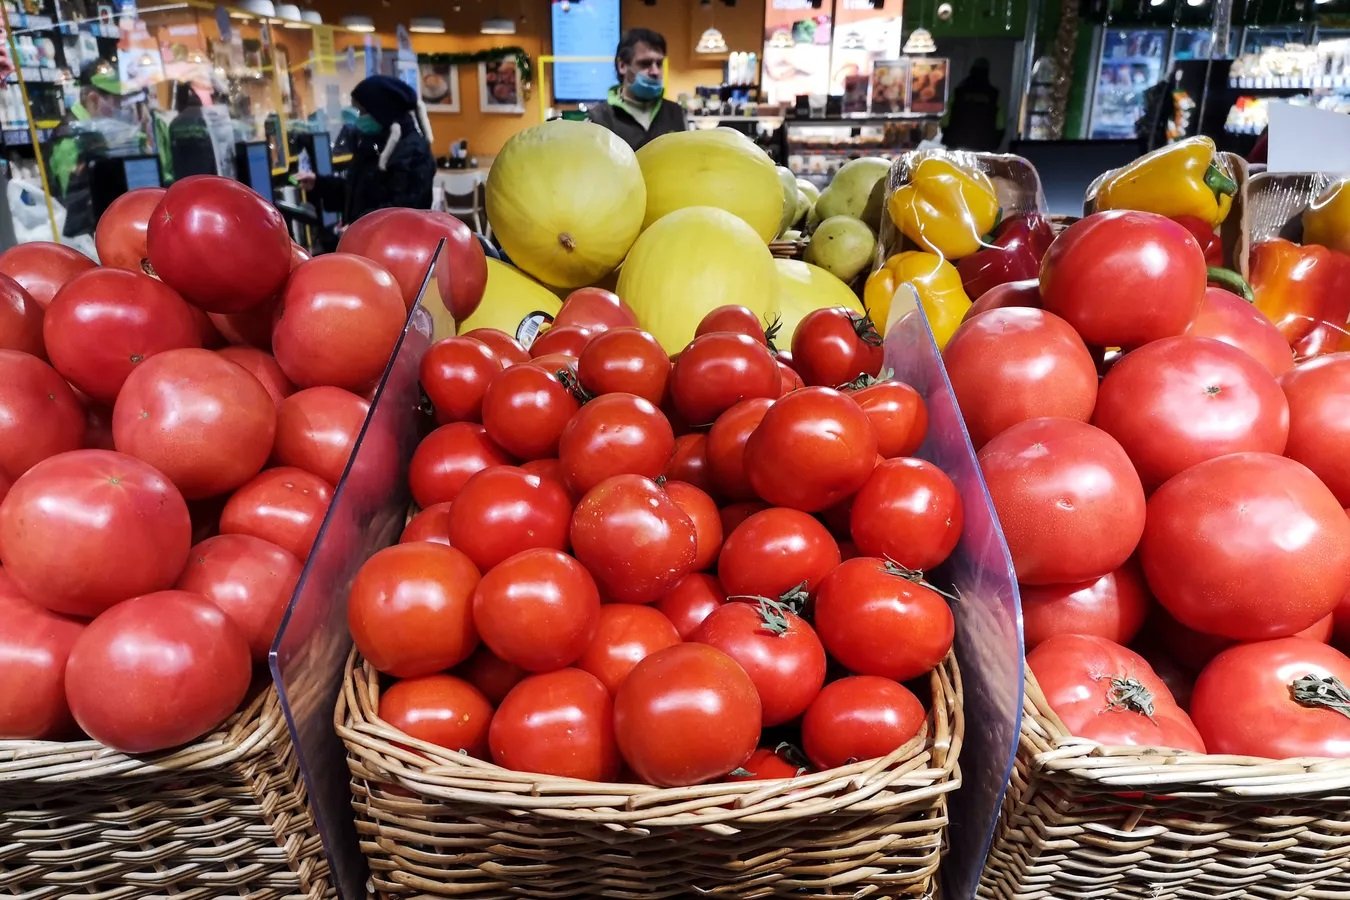 Qışda kəskin uculaşma: Bazarlarda pomidor niyə "su qiyməti"nə satılır?